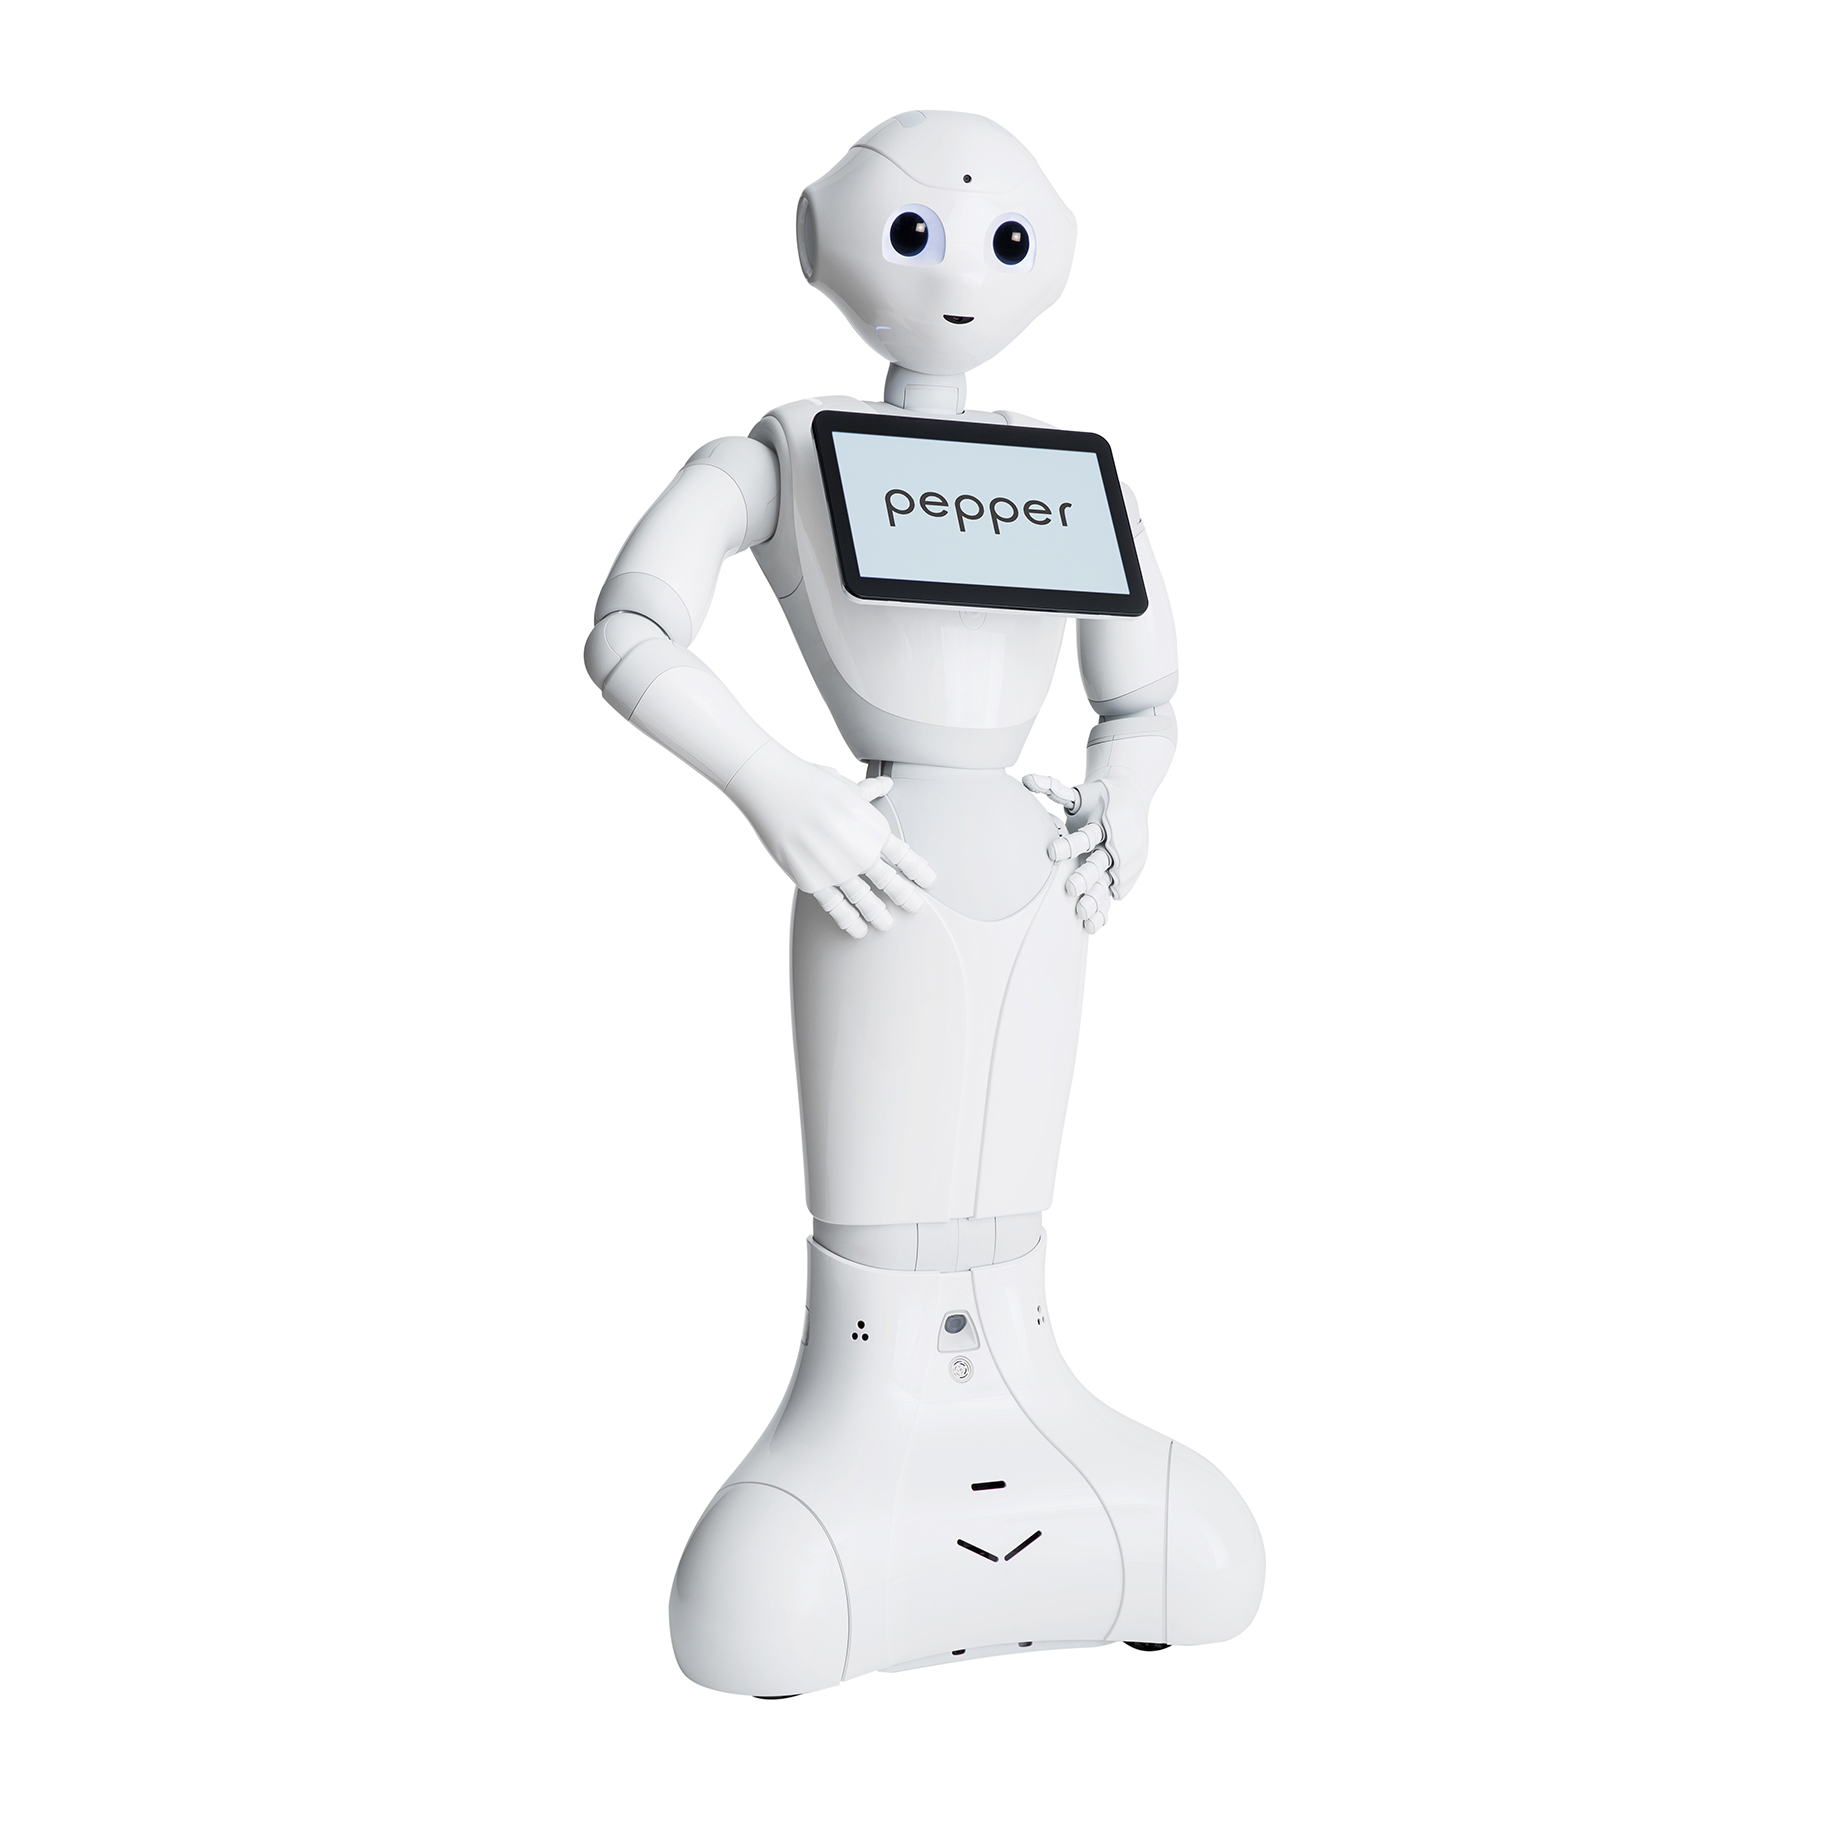 Robot Pepper Front